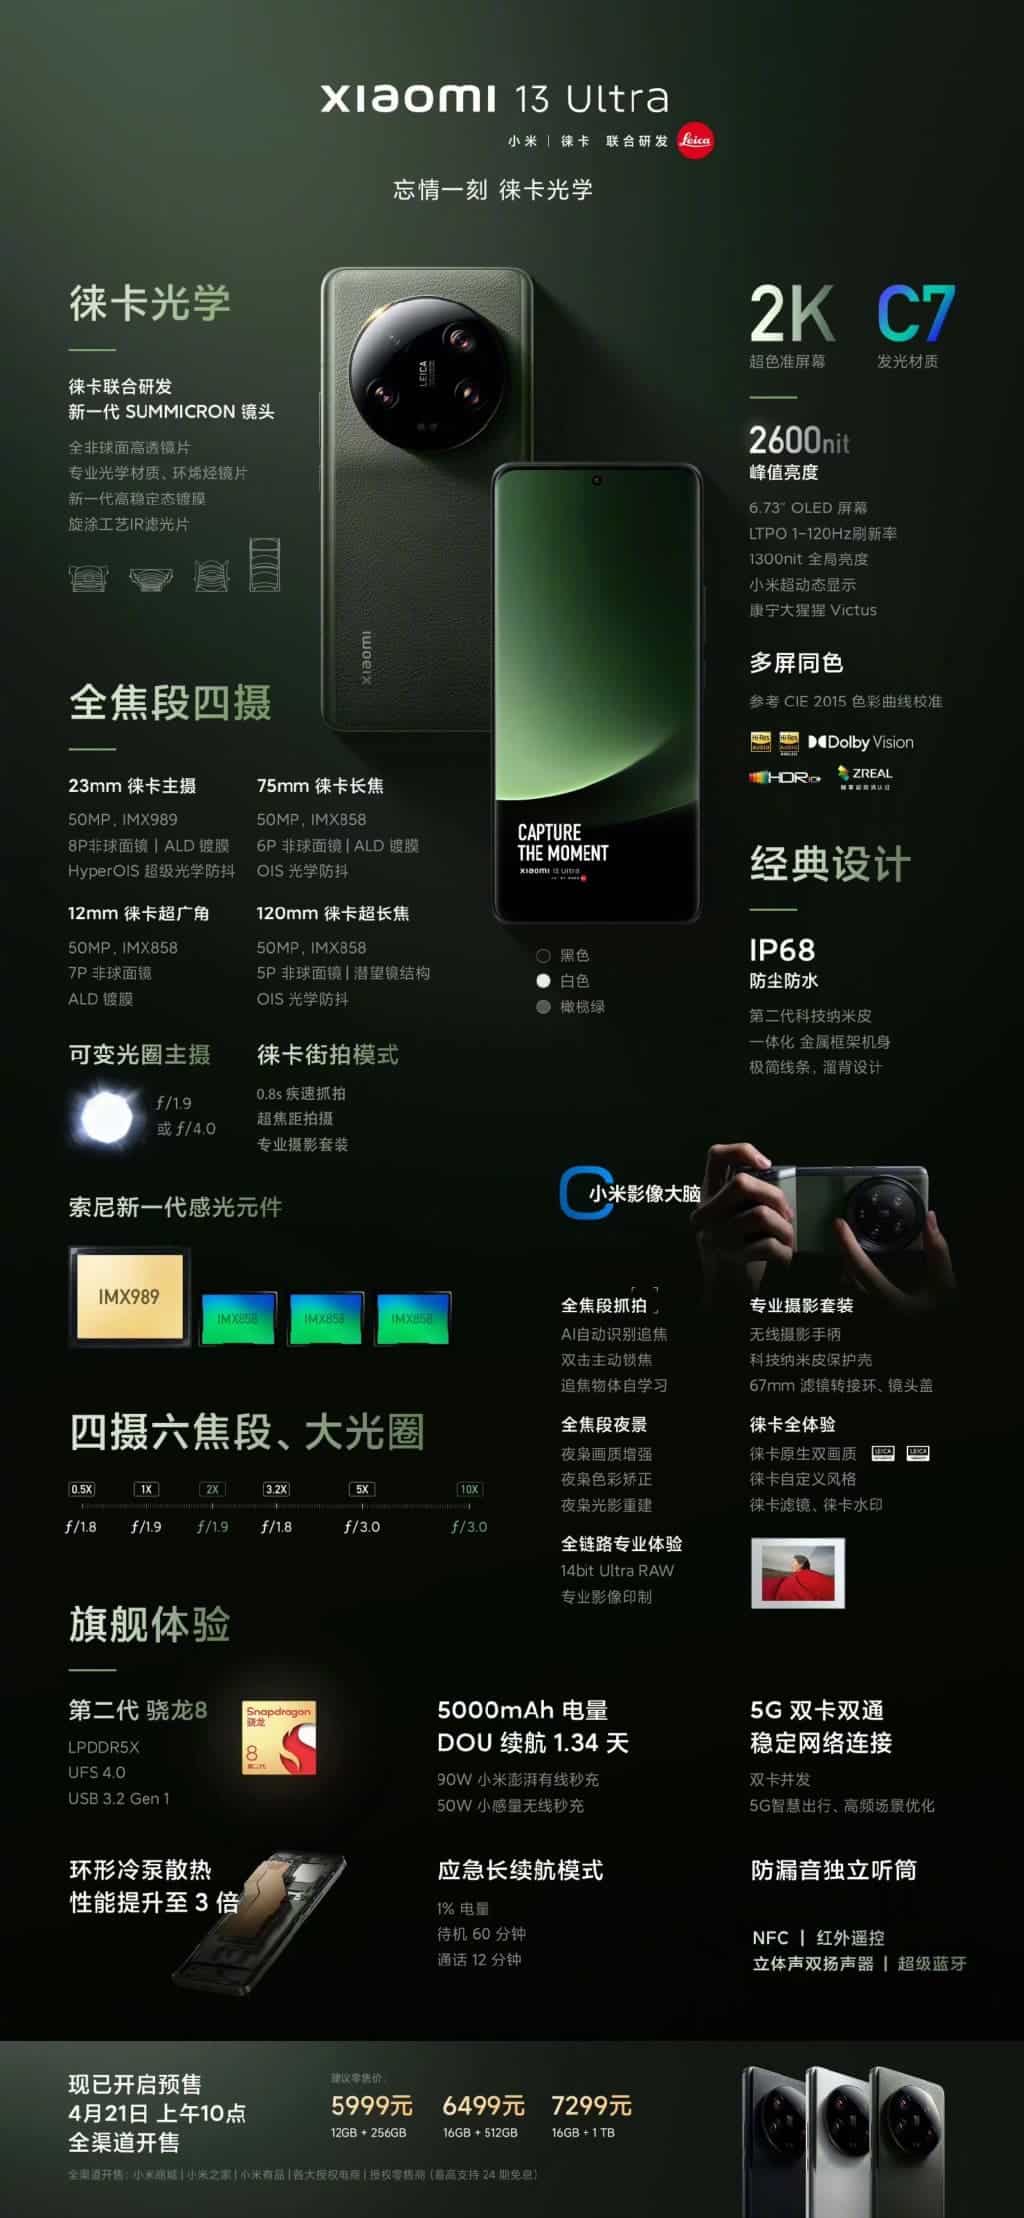 Xiaomi 13 Ultra highlights